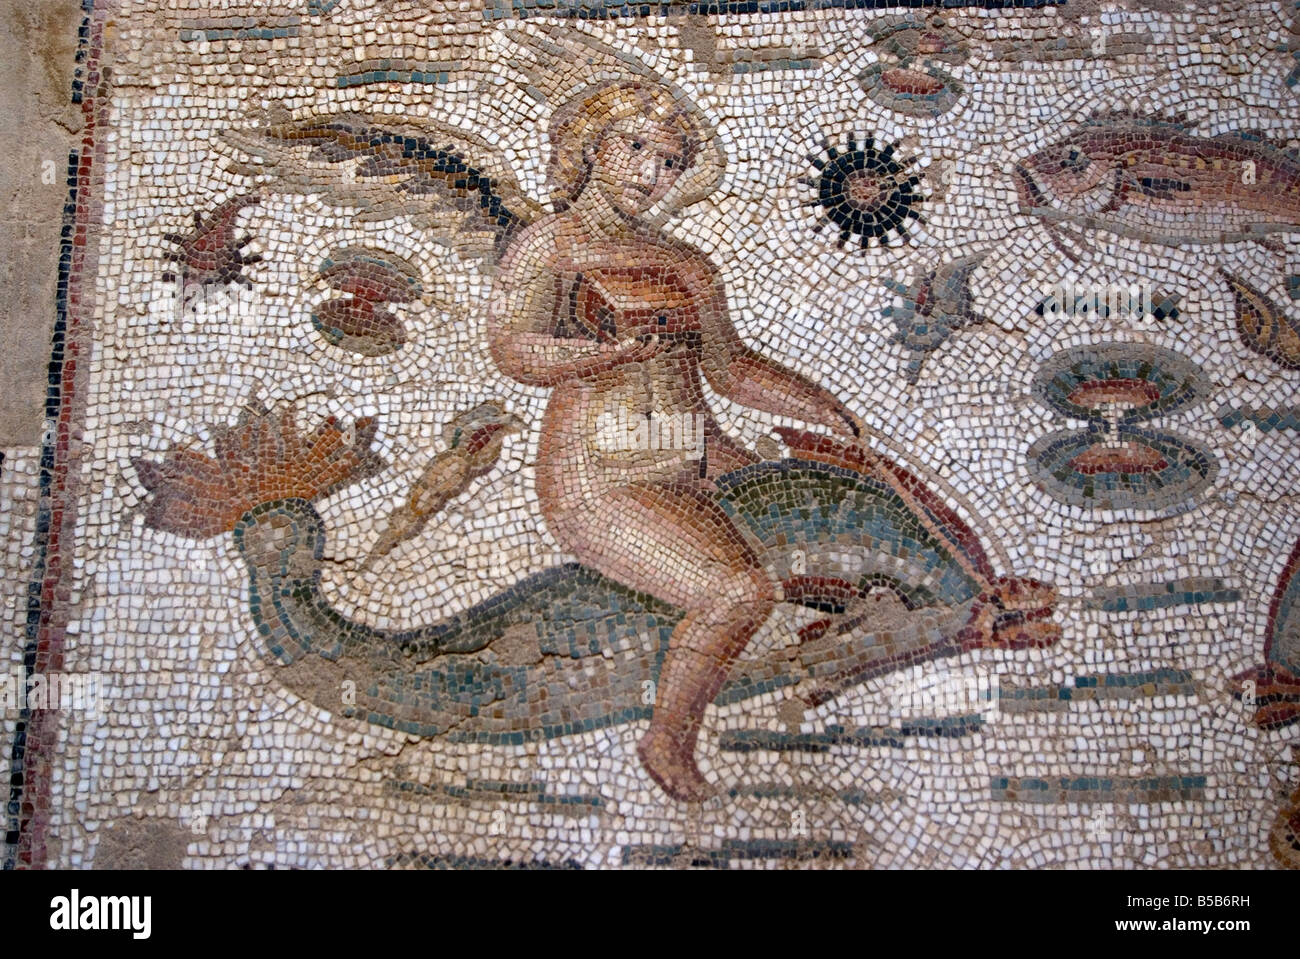 Partie d'Amphitrite mosaic, Chambre d'Amphitrite, ruine romaine de Bulla Regia, Tunisie, Afrique du Nord, Afrique Banque D'Images